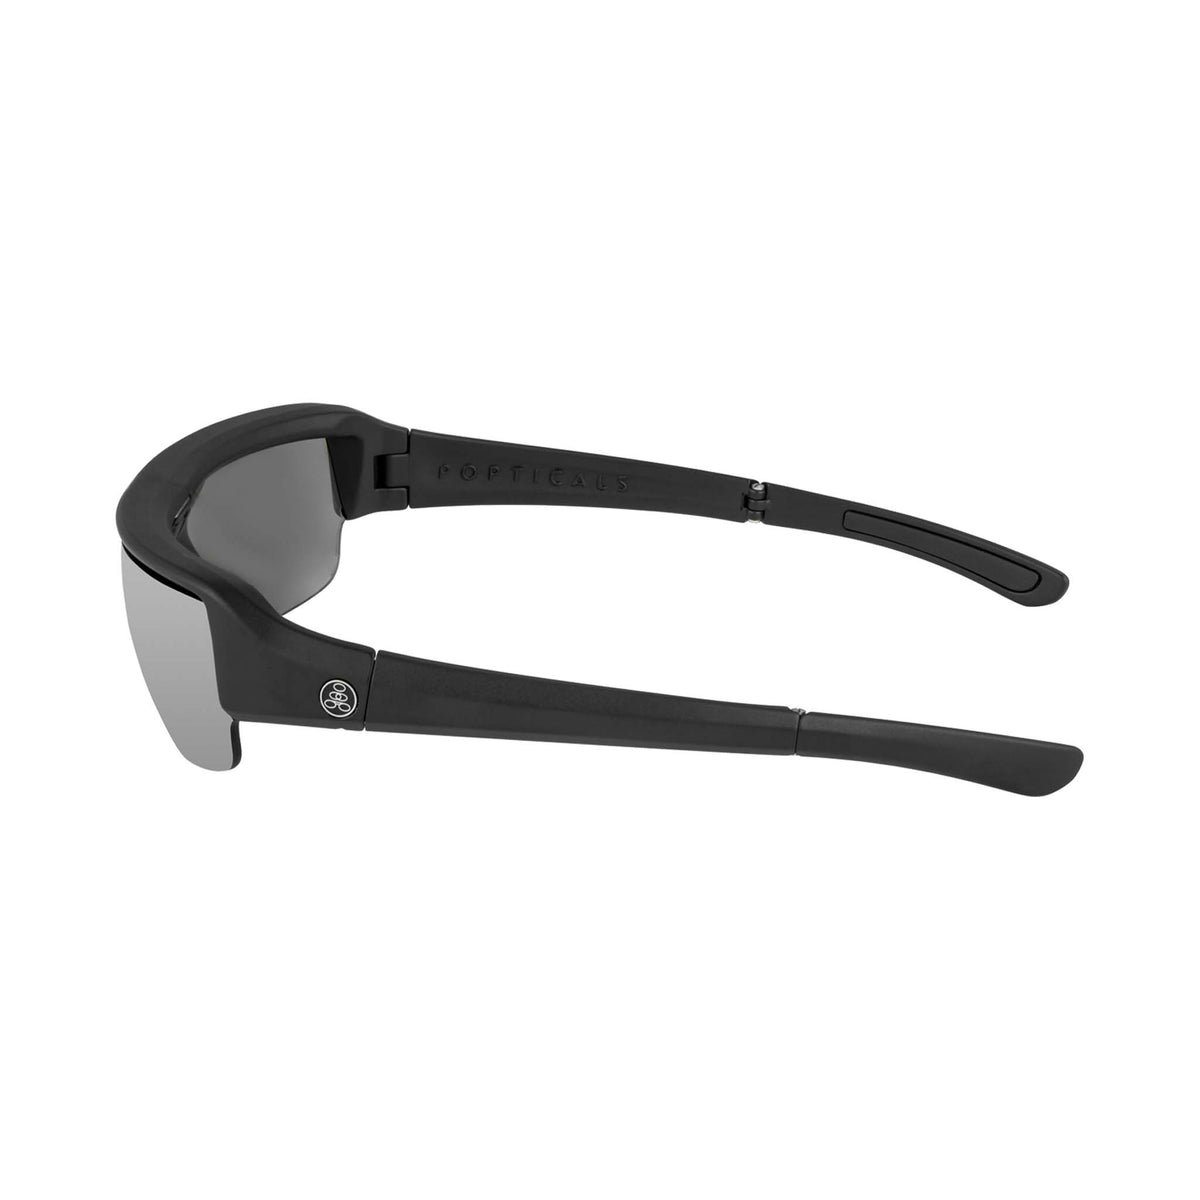 Popticals, Premium Compact Sunglasses, PopGun, 010010-BMLN, Polarized Sunglasses, Matte Black Frame, Gray Lenses w/Silver Mirror Finish, Side View